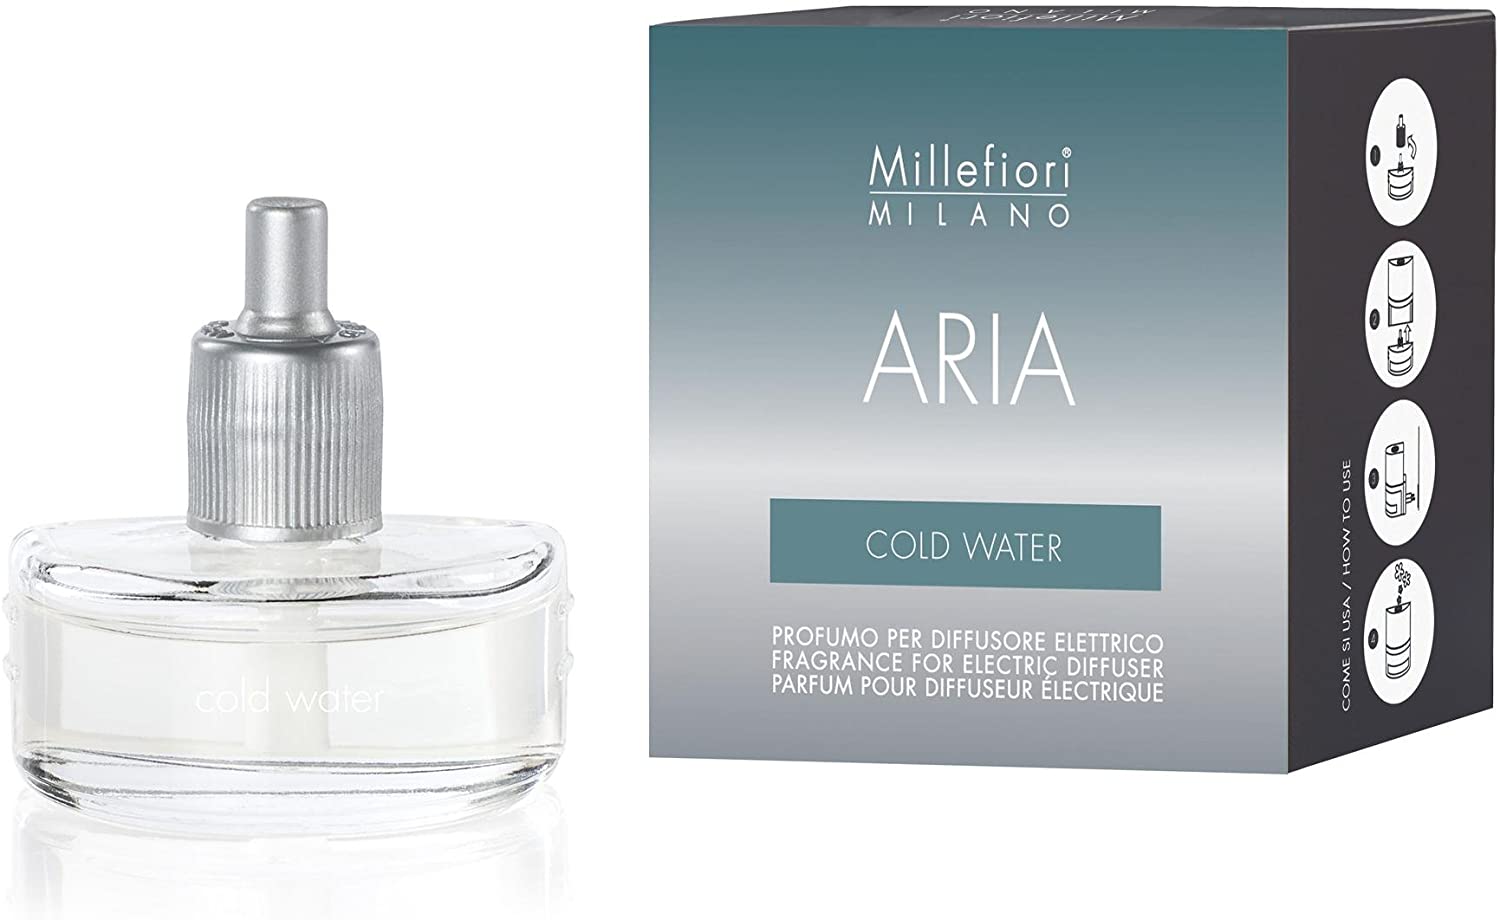 Ricarica diffusore elettrico Aria Millefiori -Cold water